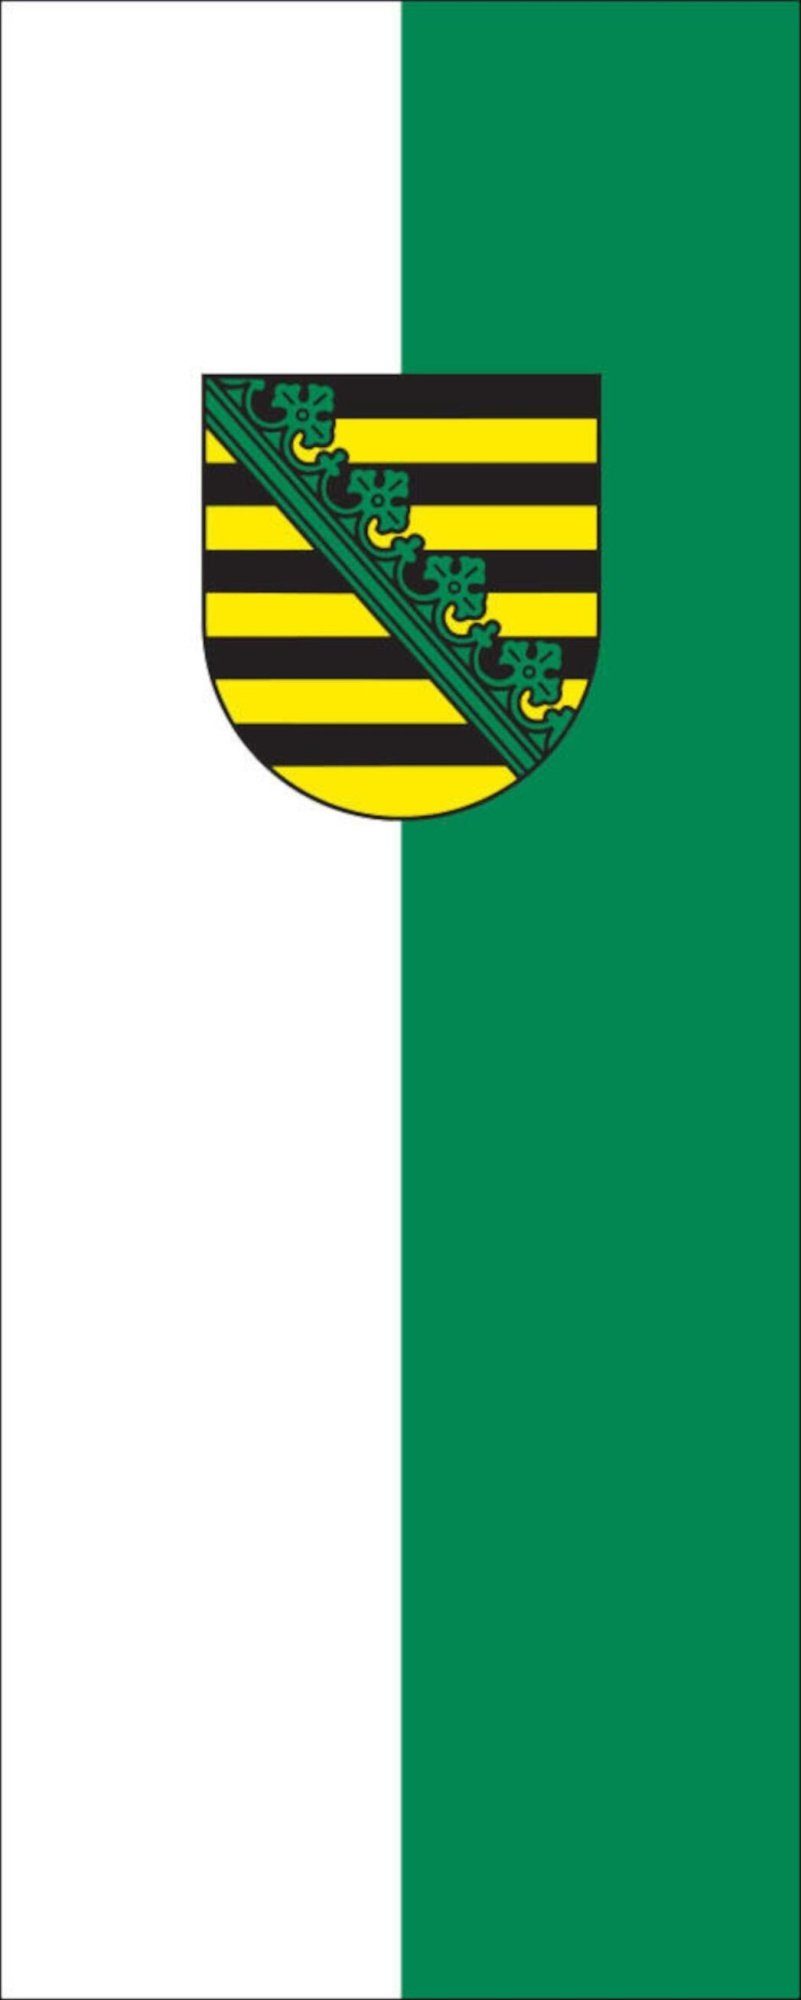 flaggenmeer Flagge Sachsen g/m² mit Wappen Hochformat 160